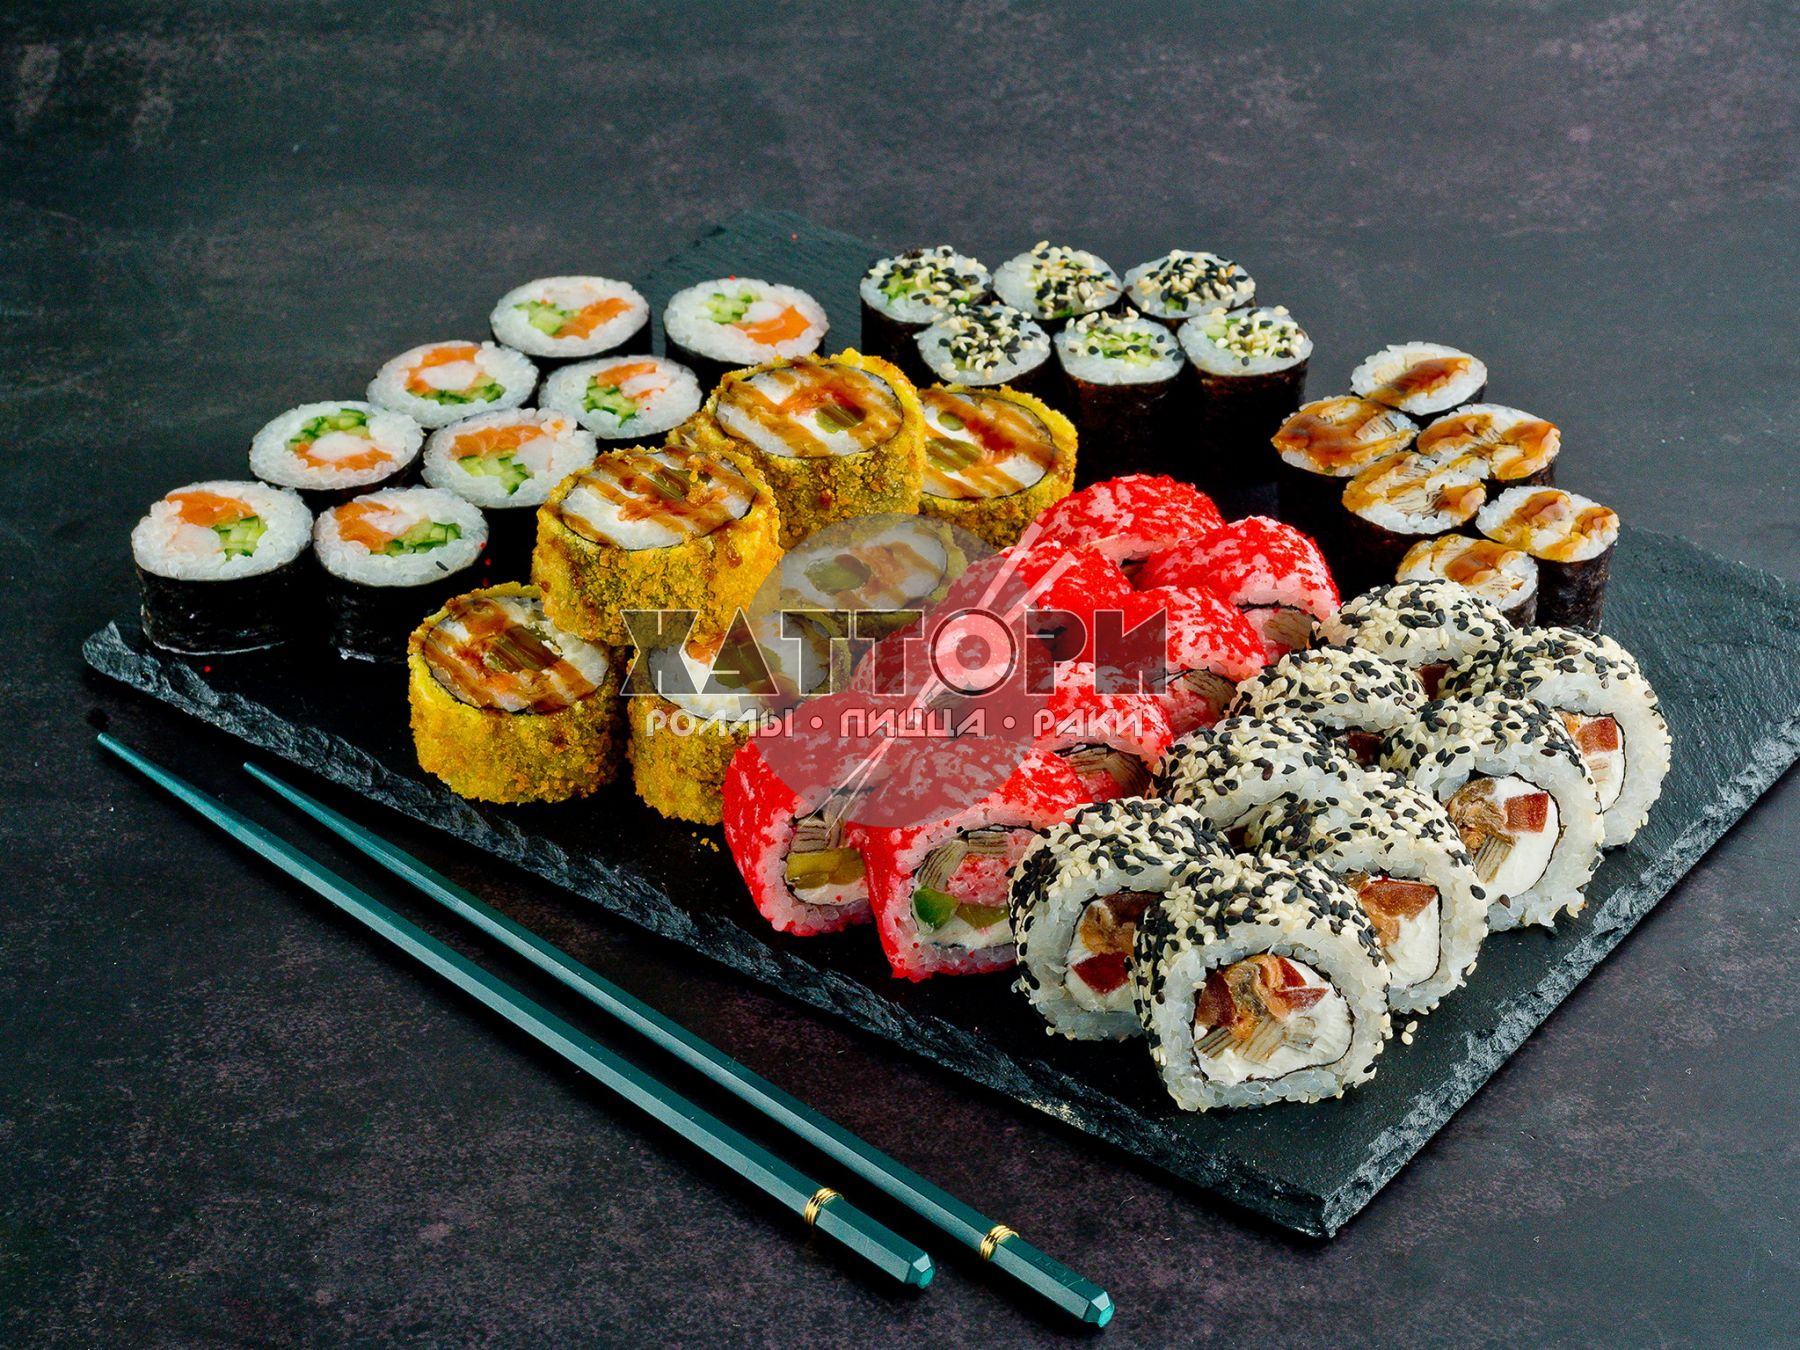 Заказать сеты суши в севастополе фото 64